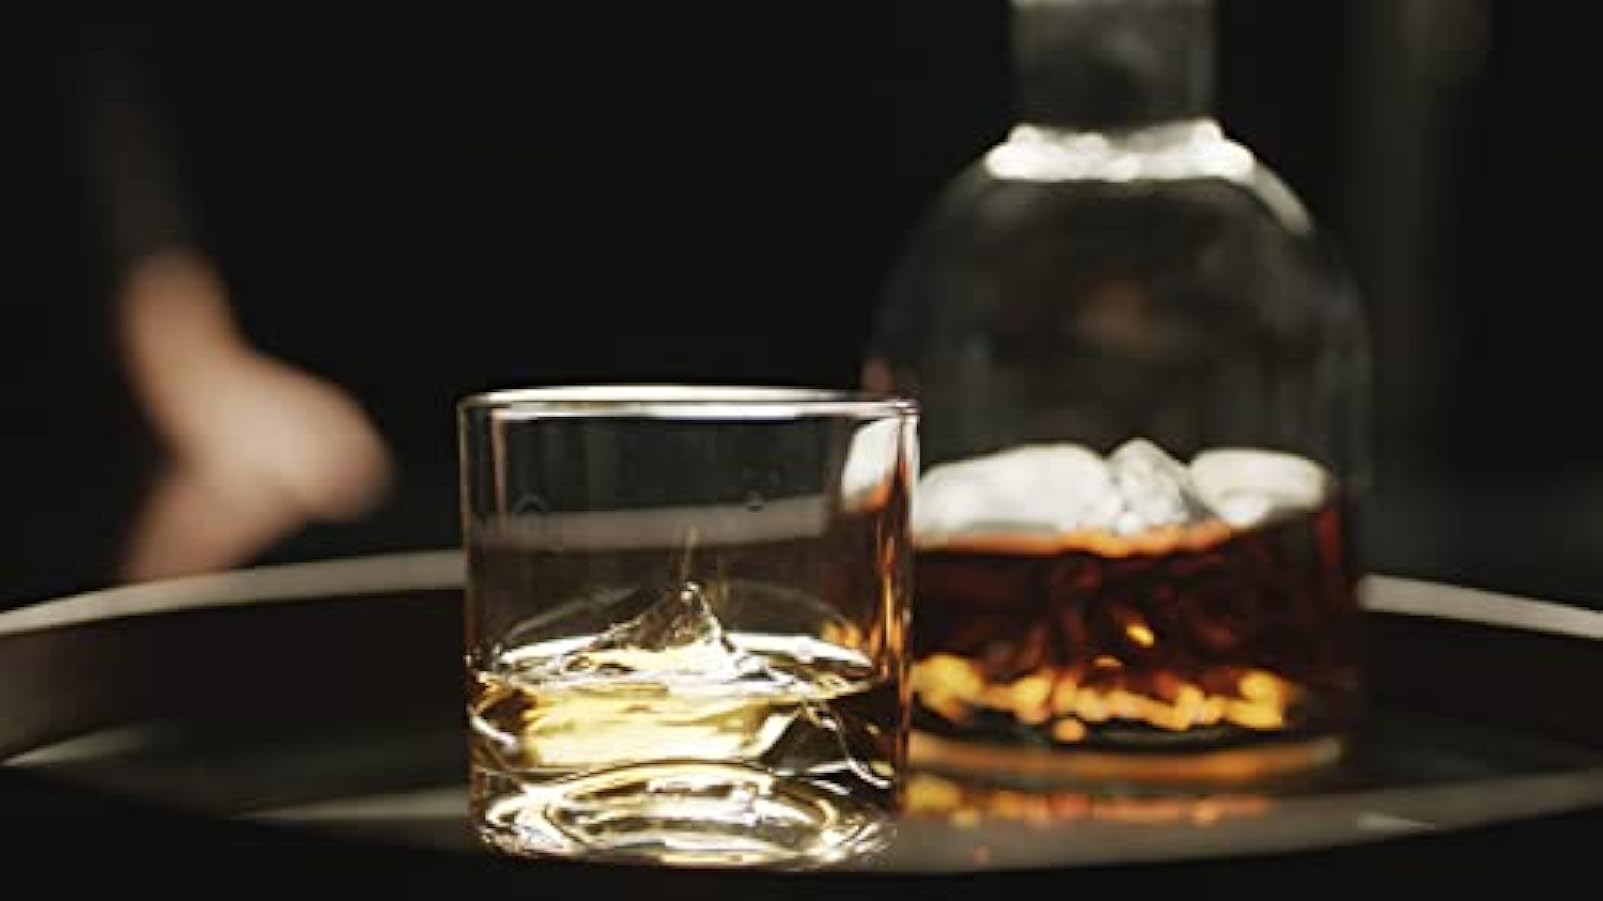 LIITON Bicchieri da whisky Everest, 4 pezzi, in vetro di cristallo, per cocktail, gin, bourbon, rum, set regalo 544492056